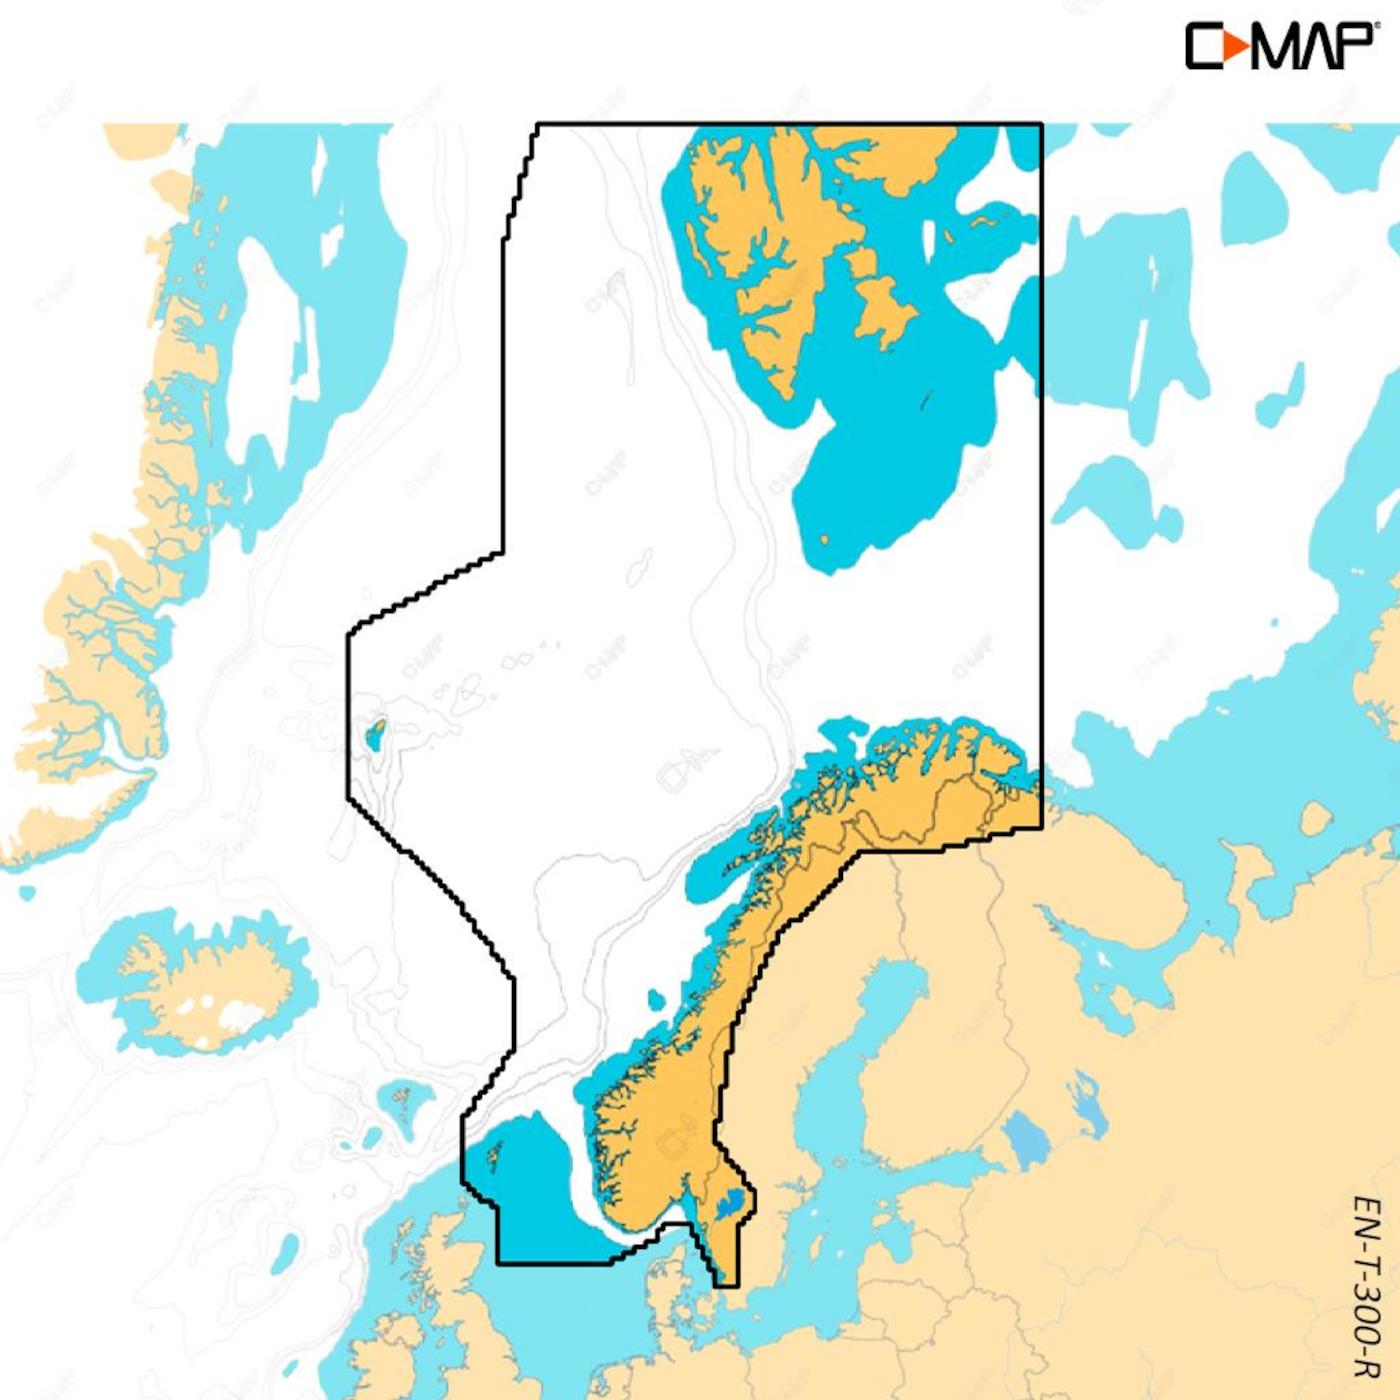 C-MAP Reveal X Nordsee (Dänemark, Schweden, Norwegen) EN-T-300